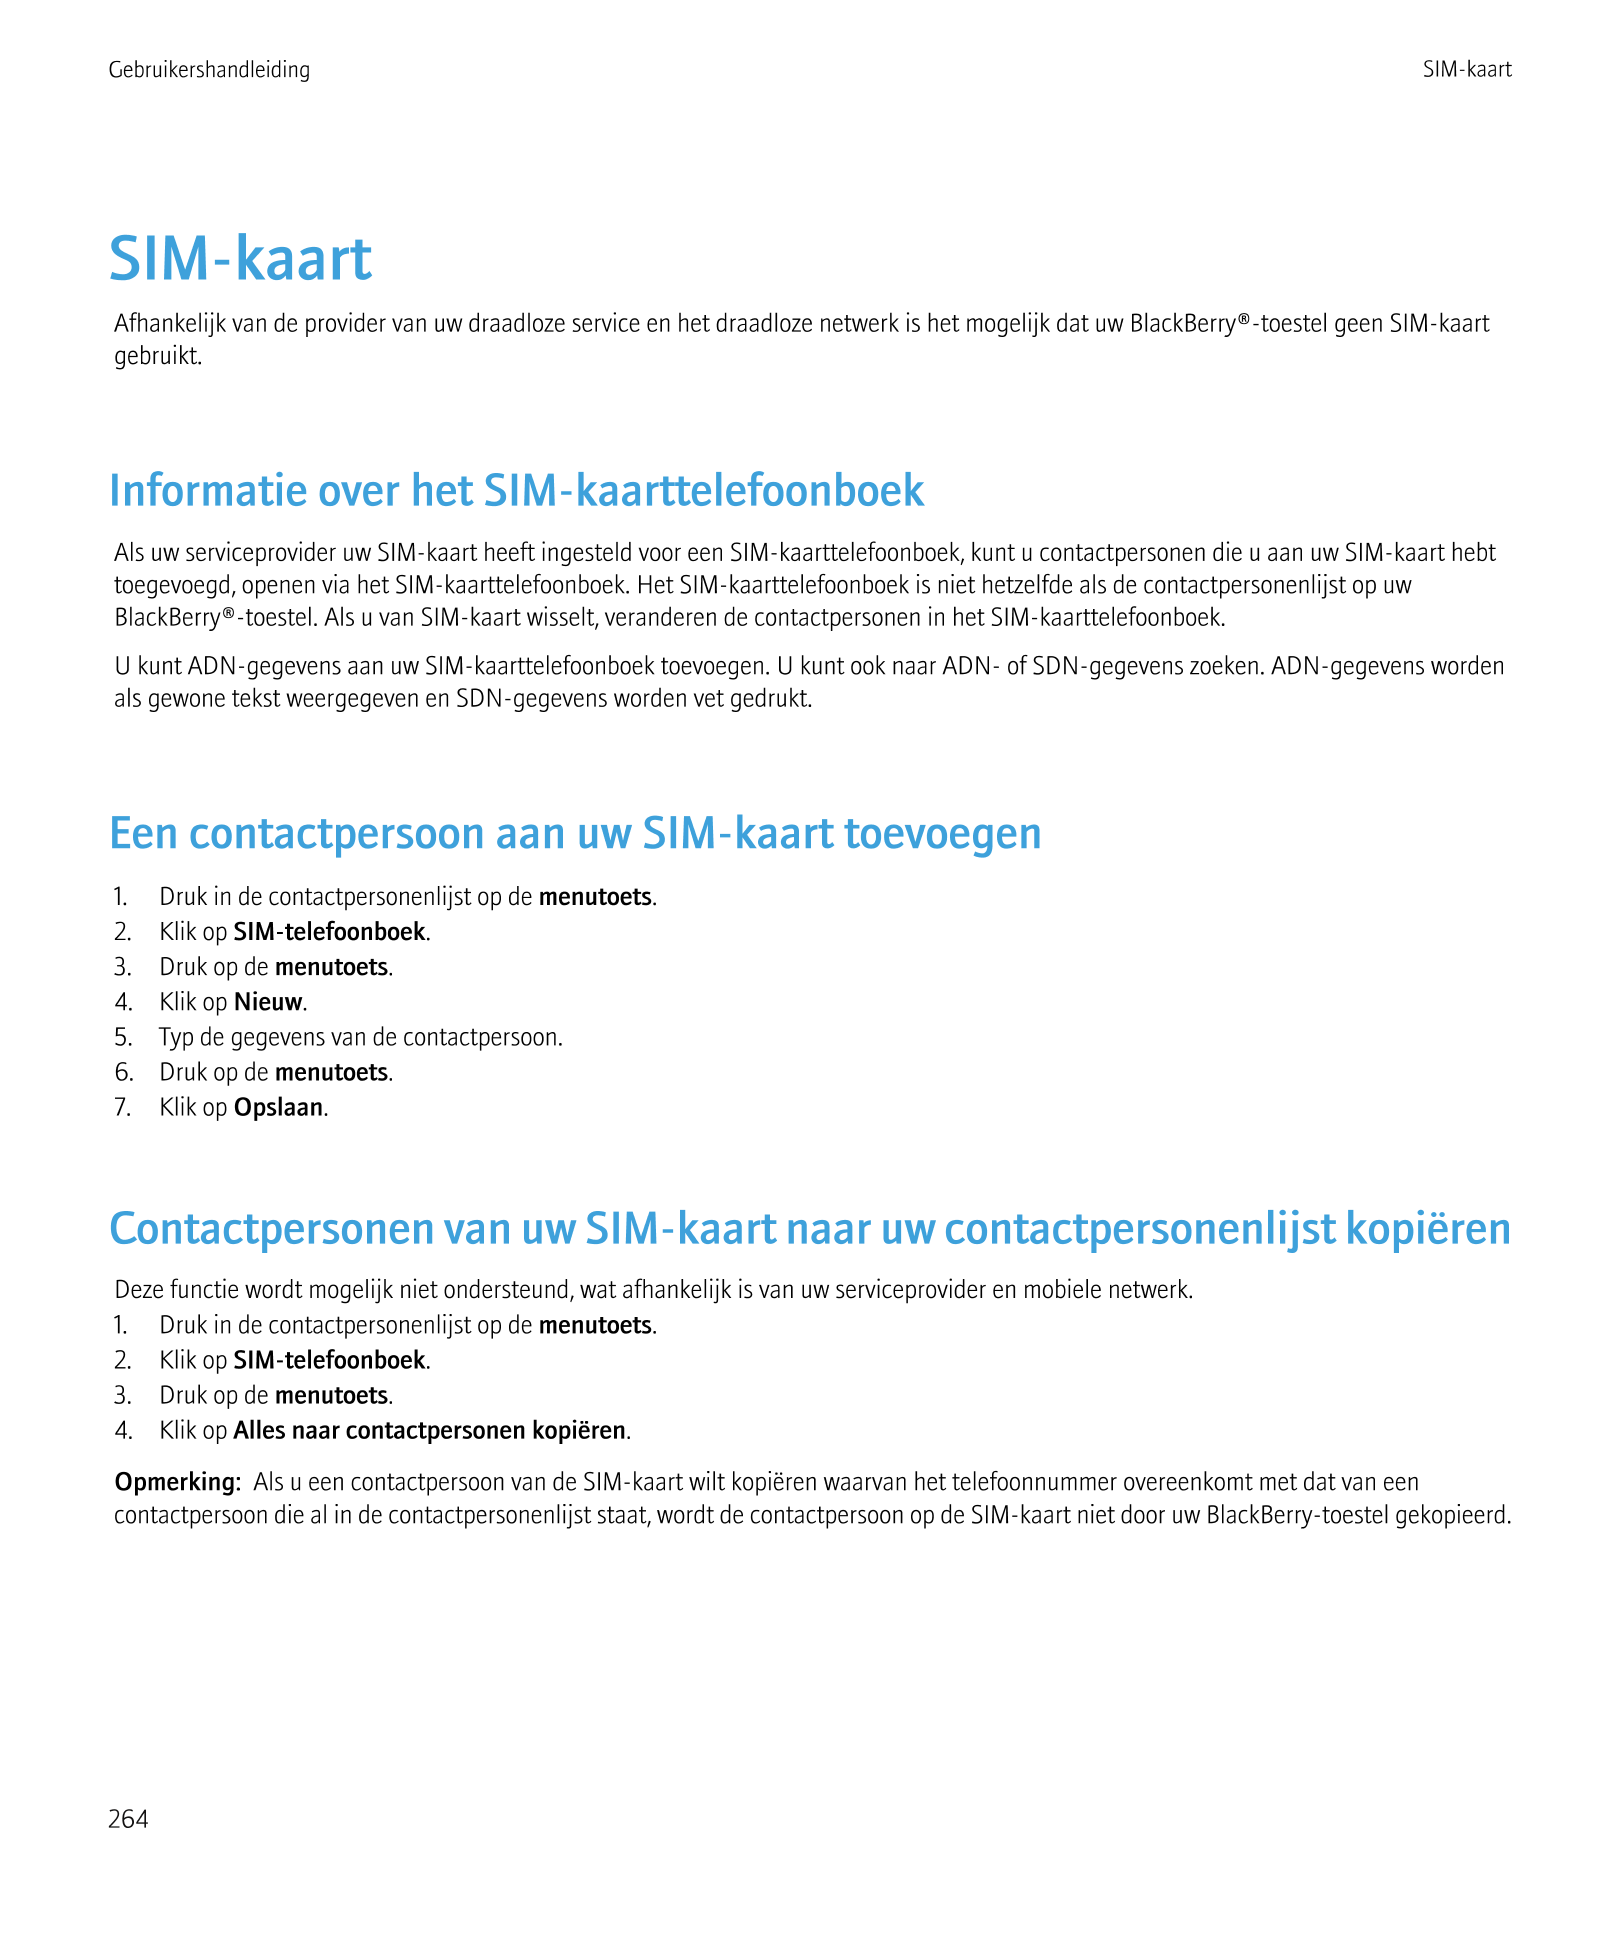 Gebruikershandleiding SIM-kaart
SIM-kaart
Afhankelijk van de provider van uw draadloze service en het draadloze netwerk is het m